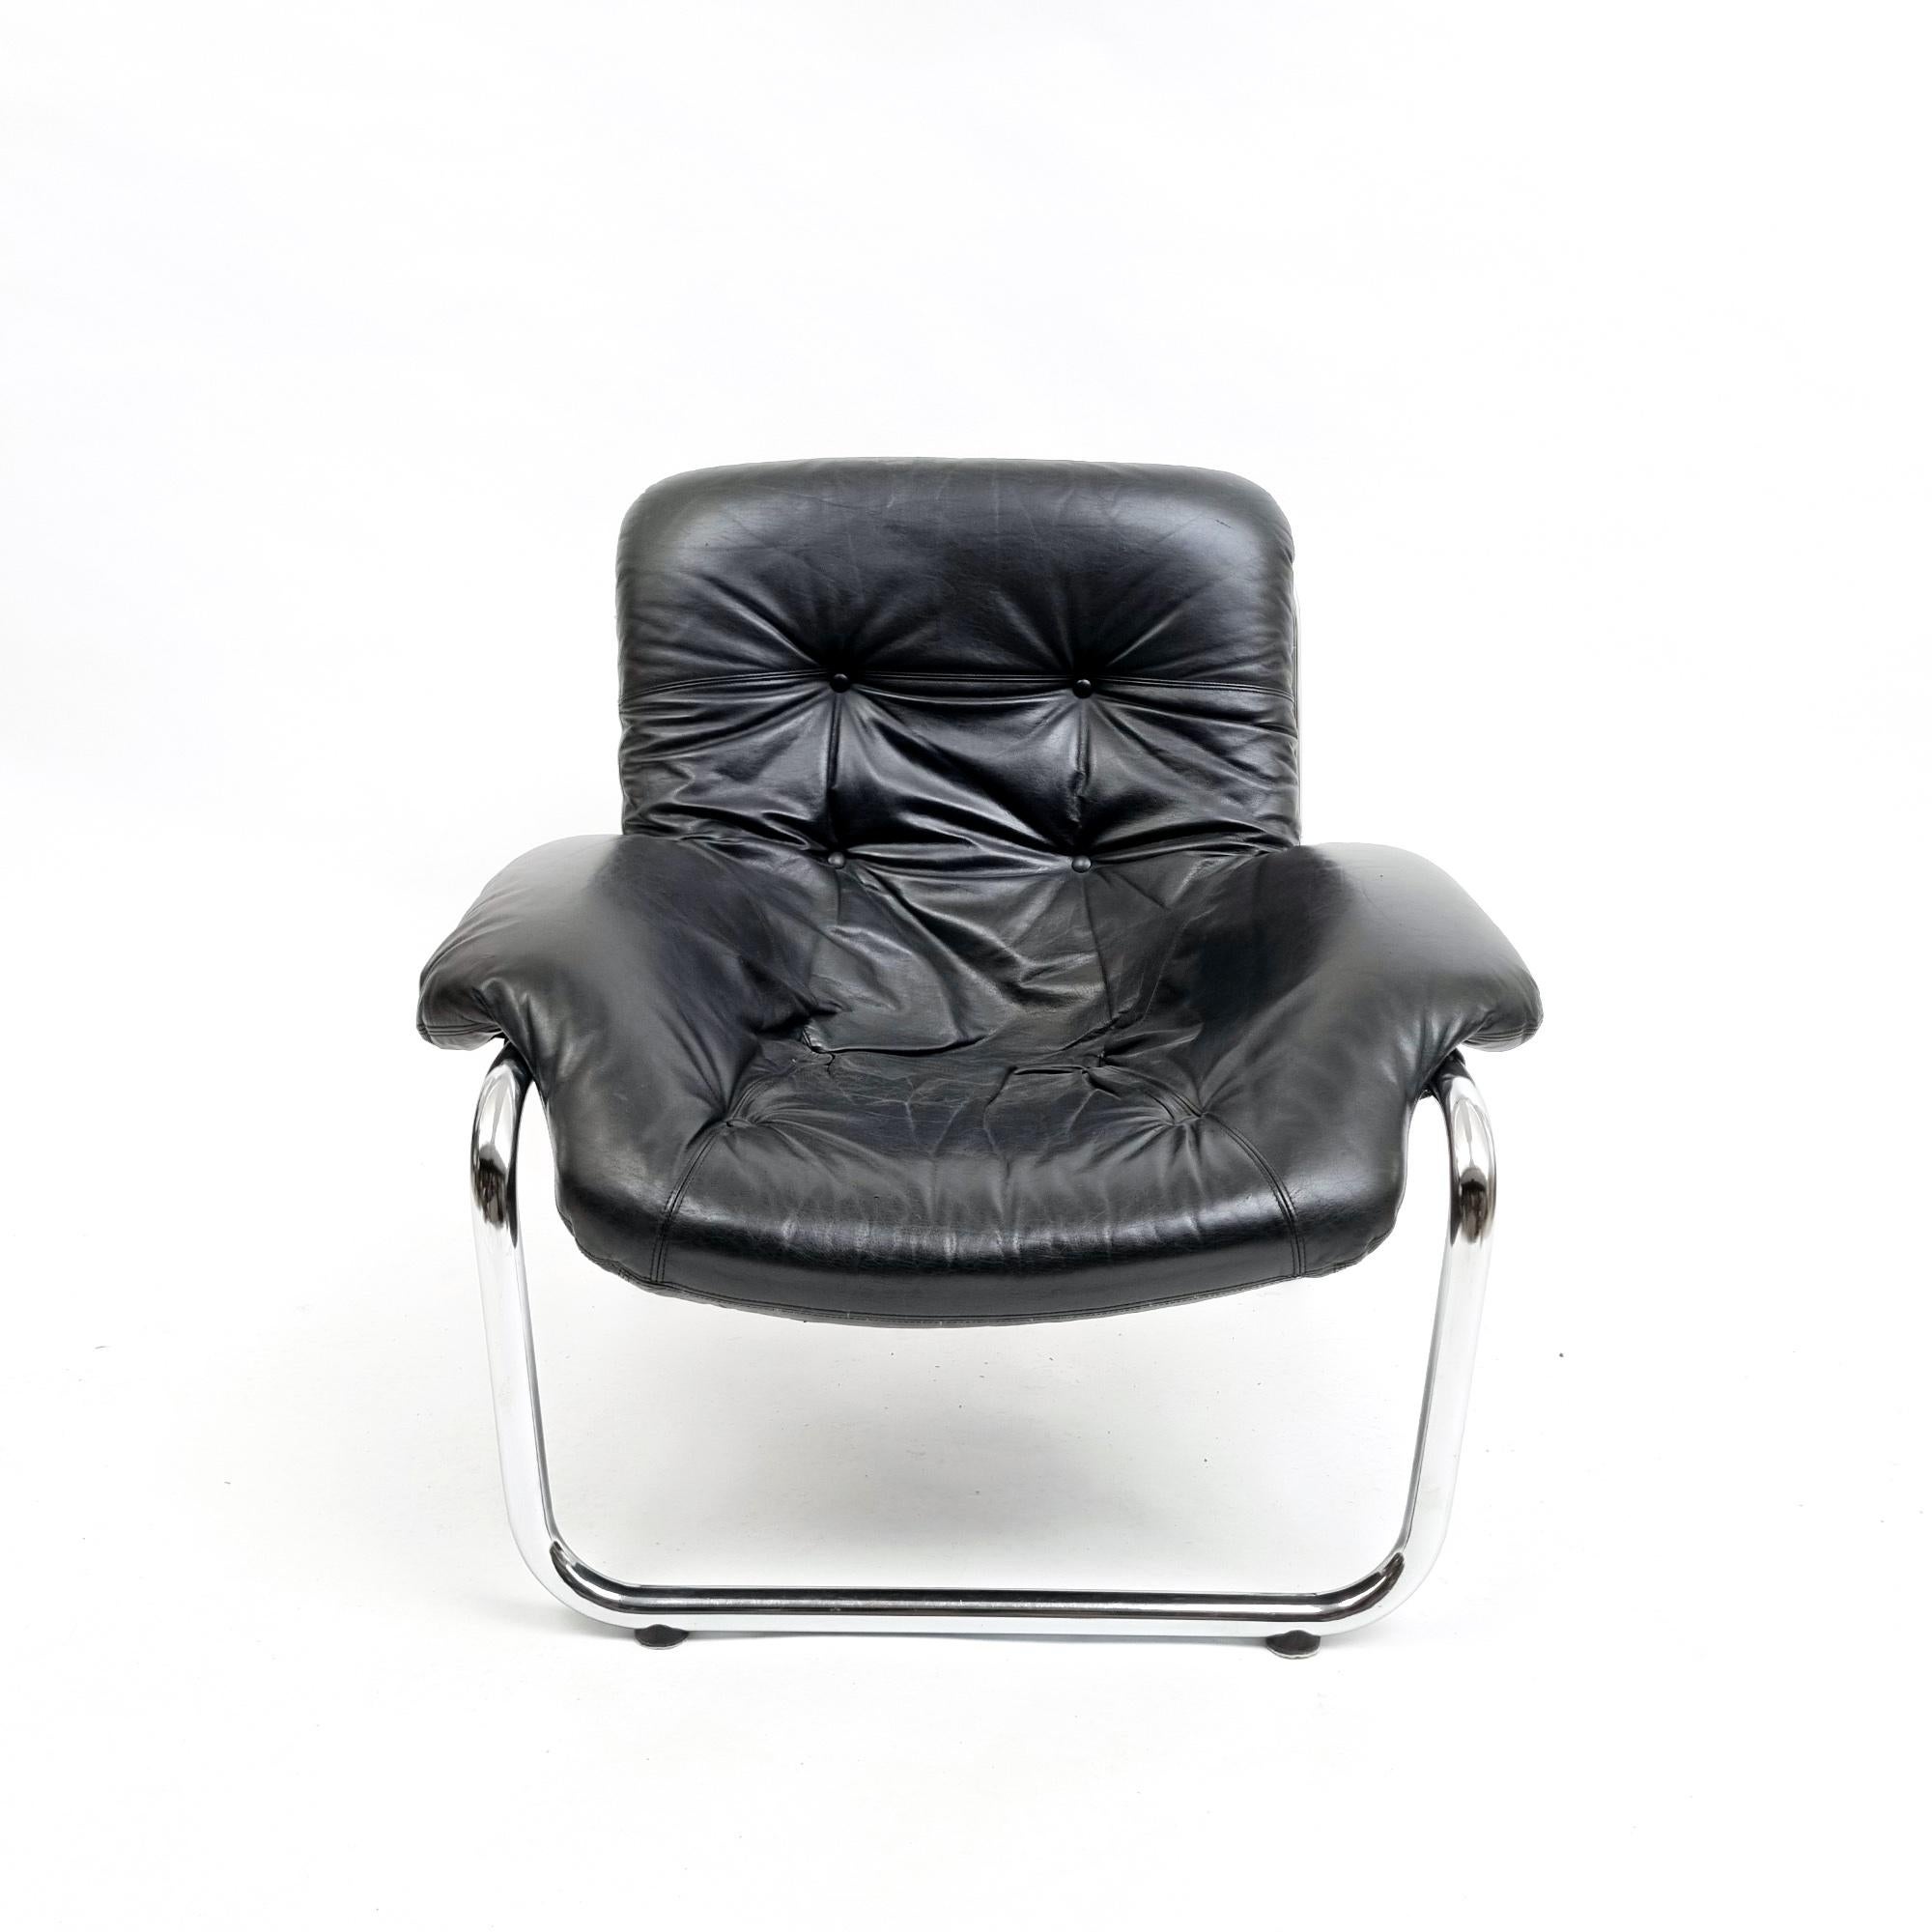 Ein wunderschöner Vintage-Sessel, der oft Marcel Breuer zugeschrieben wird und aus den 1970er Jahren stammt. Der Stuhl verfügt über eine verchromte Metallstruktur und eine schwarze Lederpolsterung in ausgezeichnetem Zustand. Mit seinen